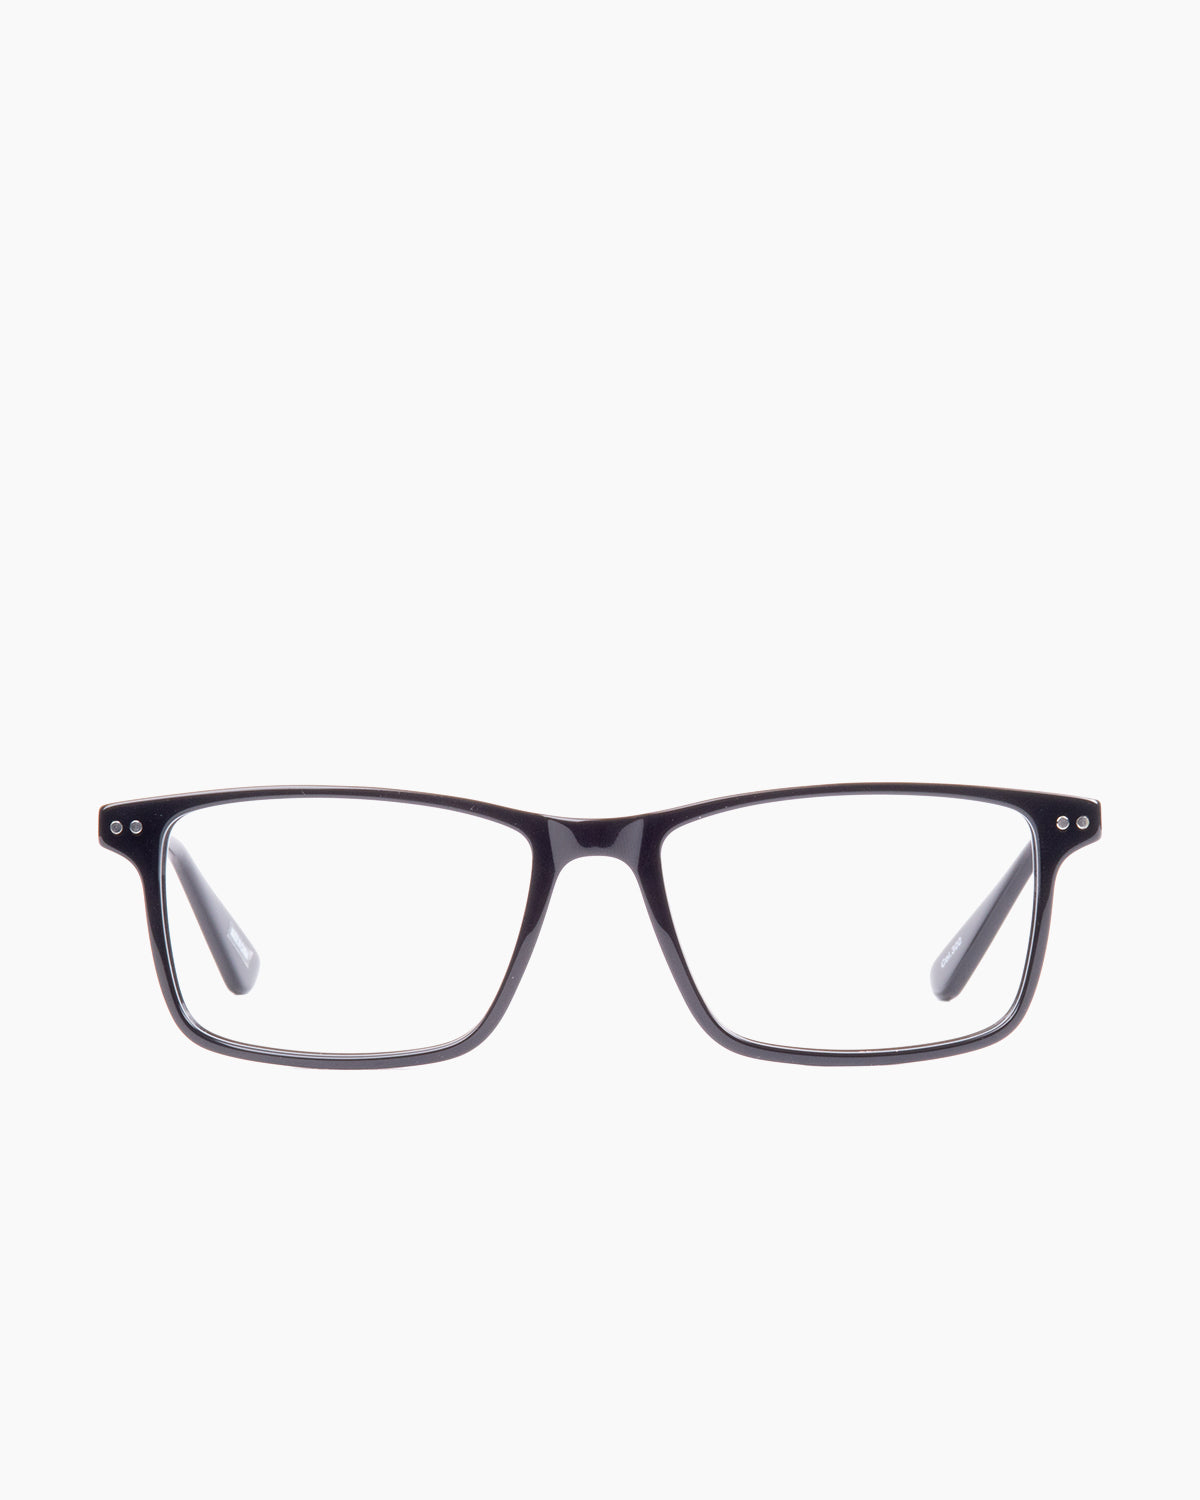 Evolve-Willis-300 | glasses bar:  Marie-Sophie Dion